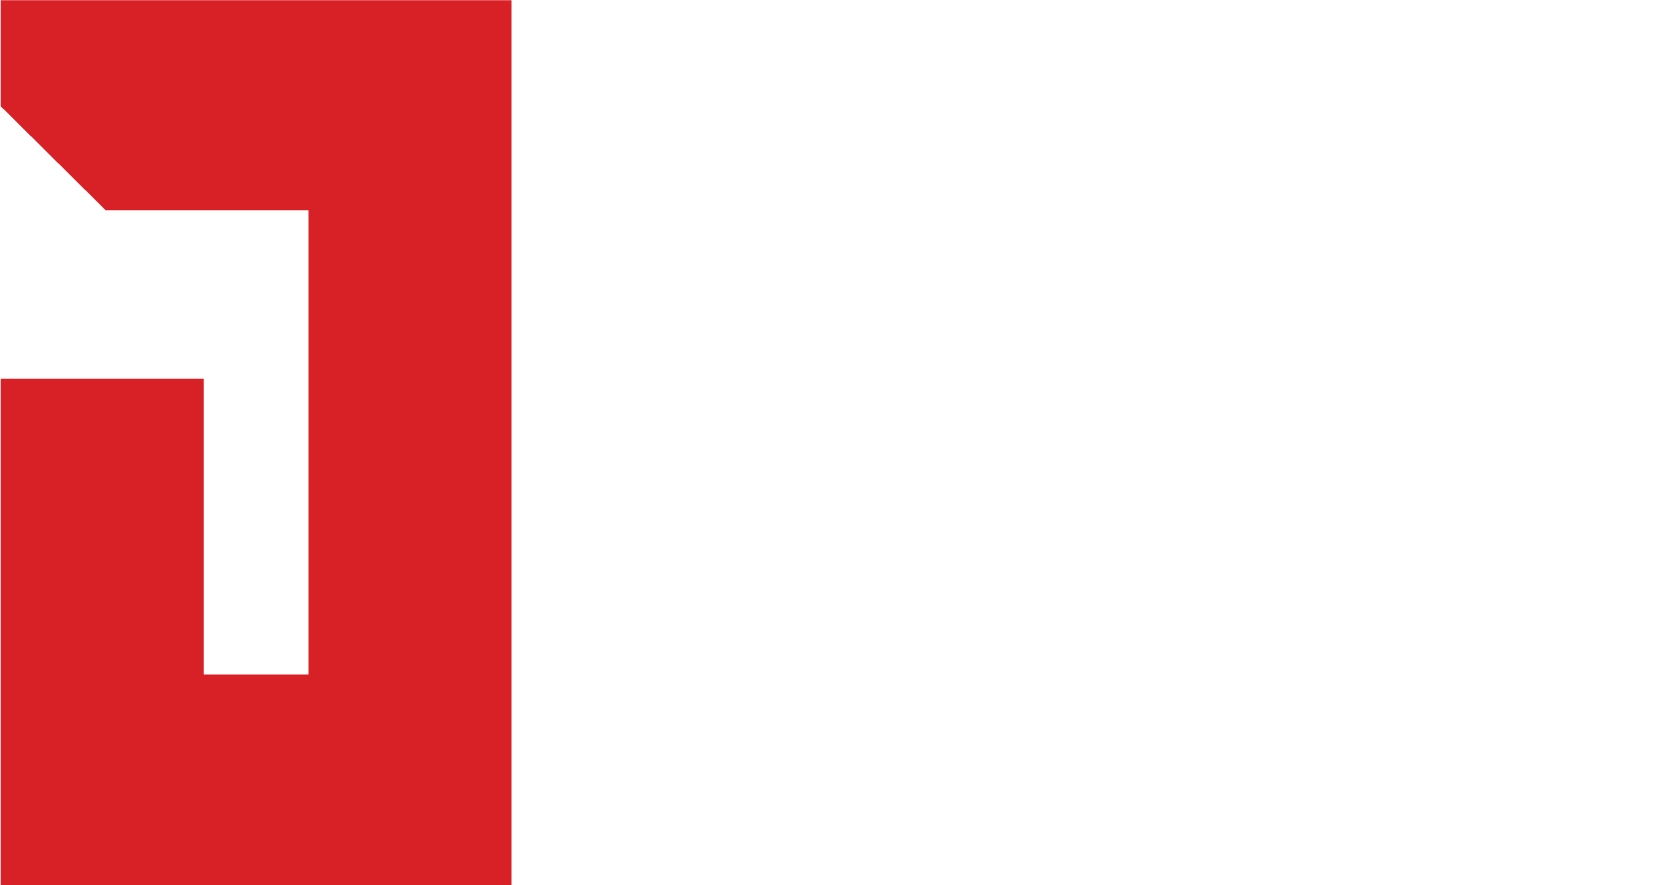 Ripe Connect